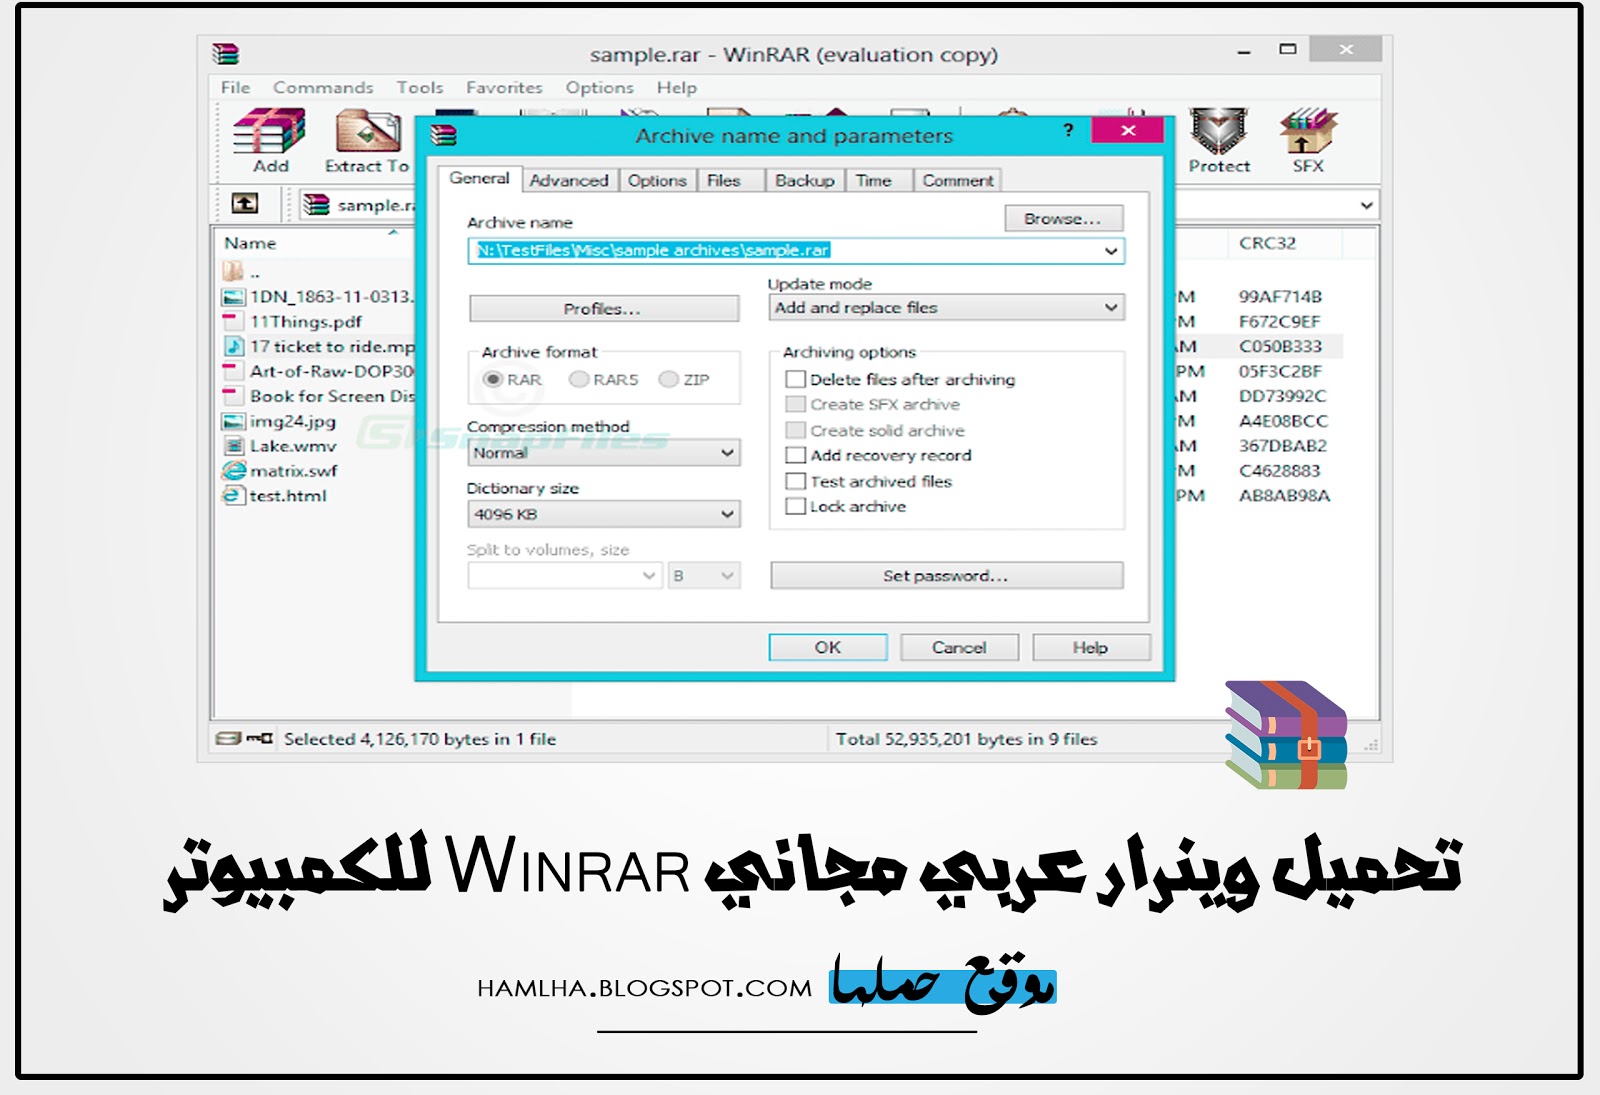 تنزيل برنامج وينرار 2020 عربي تحميل Winrar 2020 لفك و ضغط